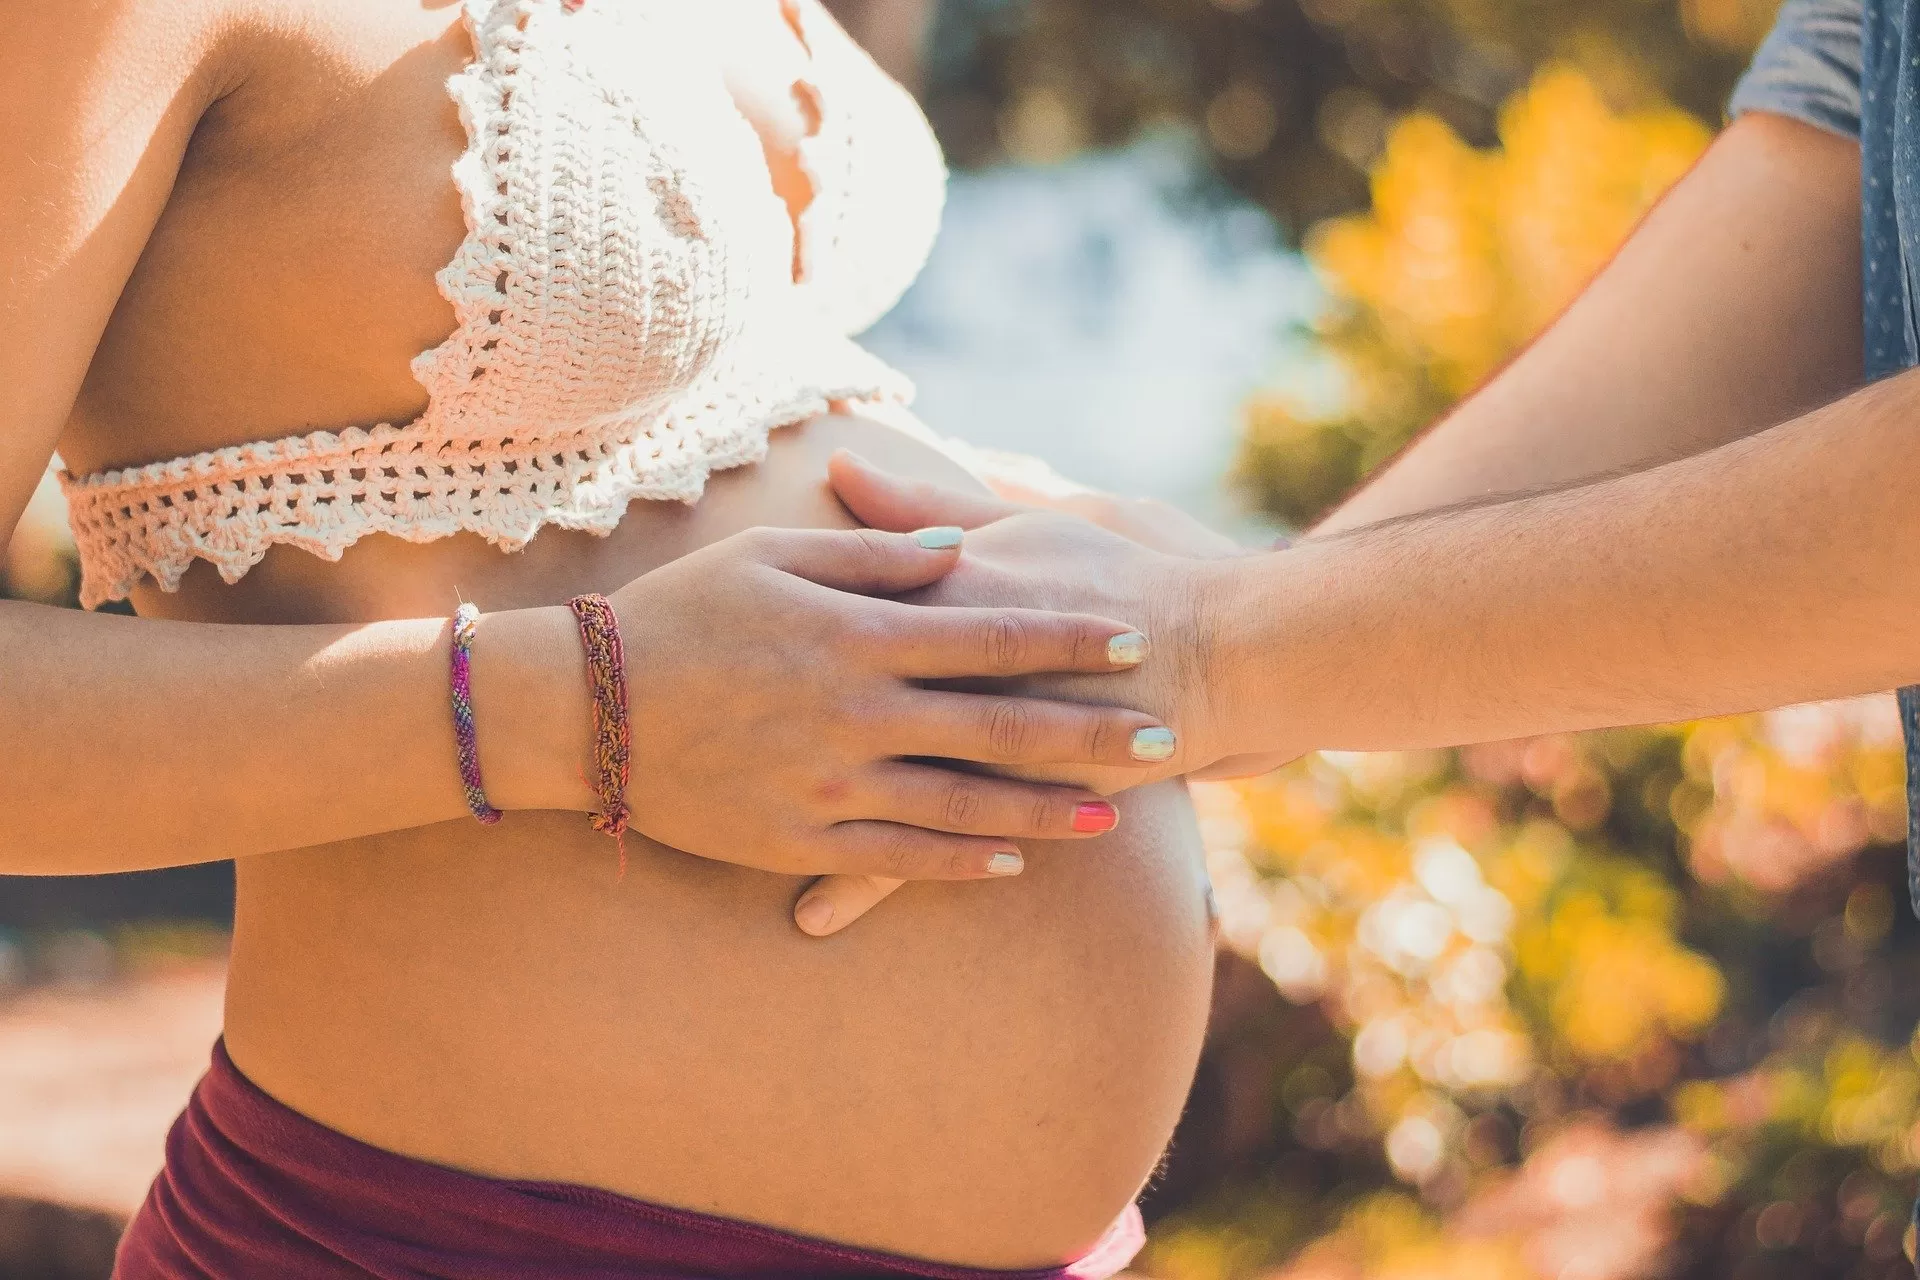 Posílením pánevního dna se snižuje riziko potratu